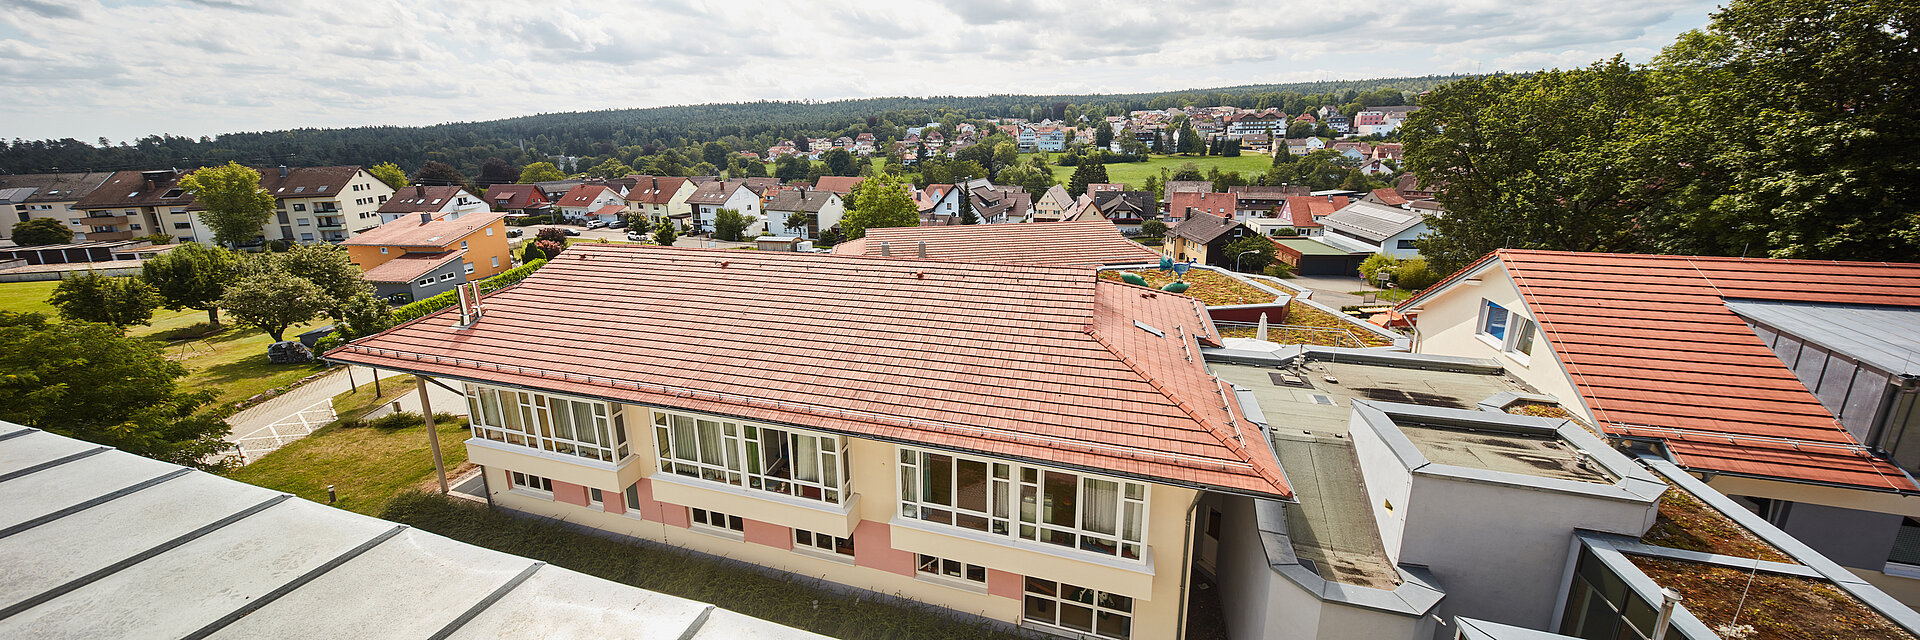 Bild: Die Gebäude der Kinderklinik Schömberg in der Draufsicht